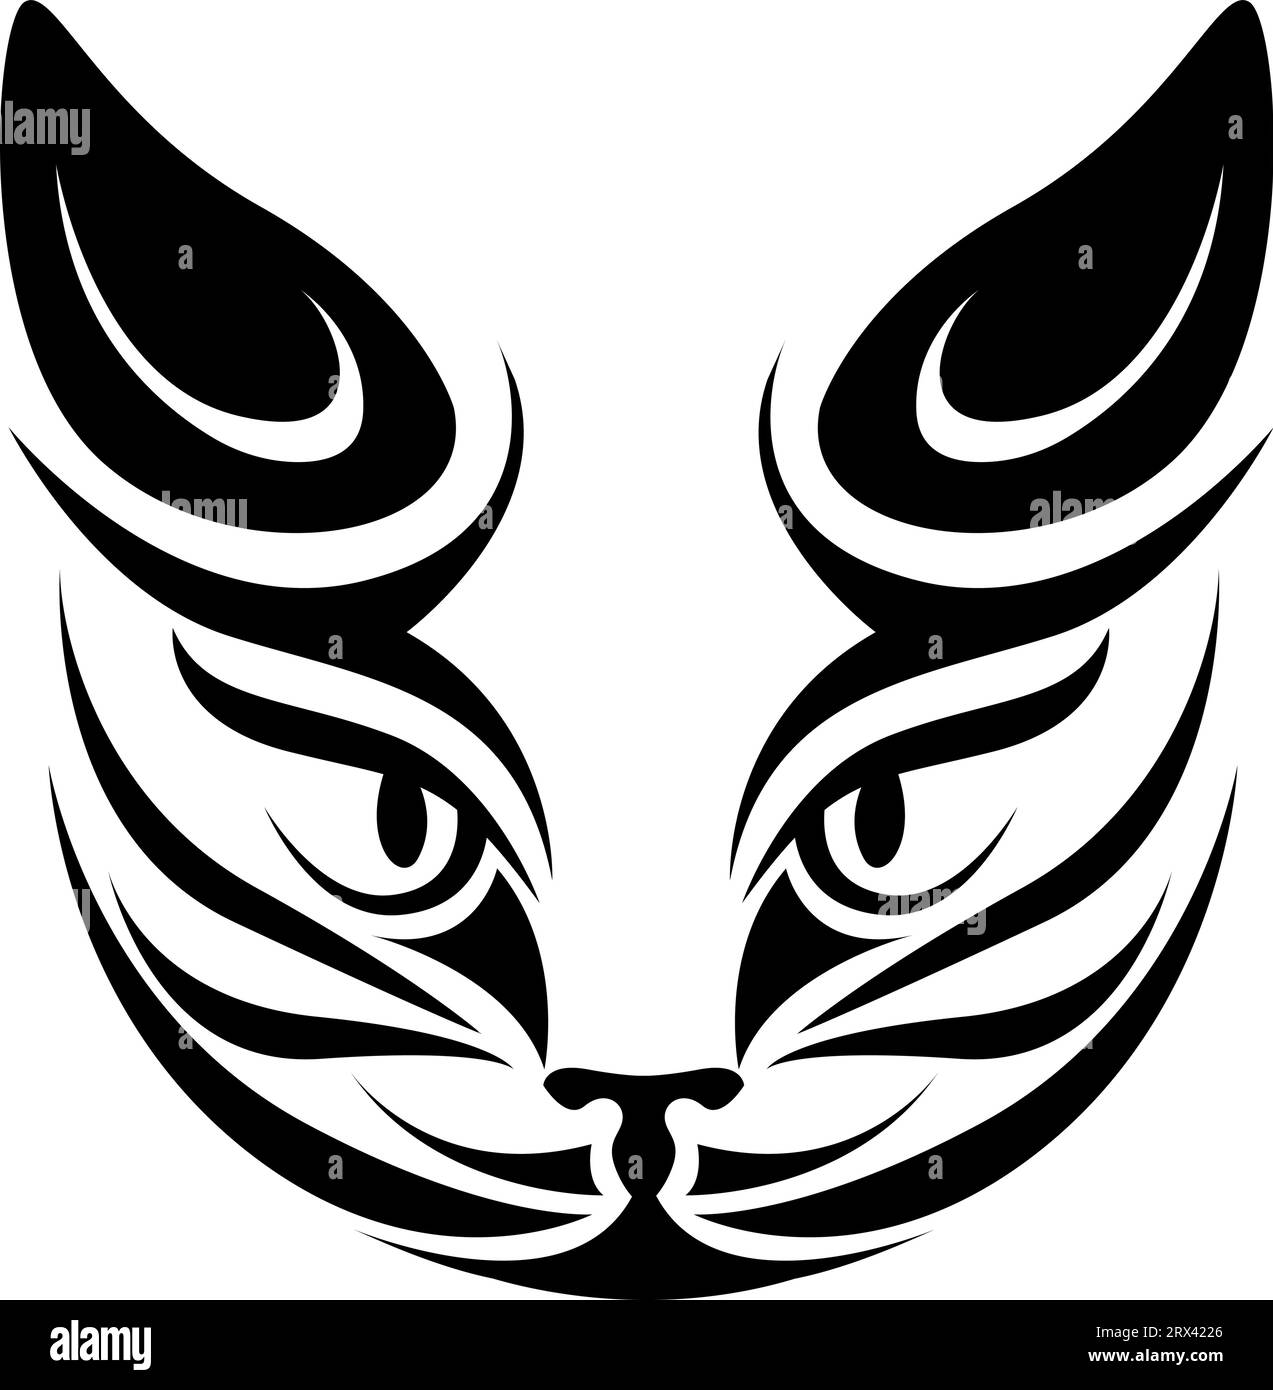 Tatouage tribal de tête de chat, illustration de tatouage, vecteur sur un fond blanc. Illustration de Vecteur